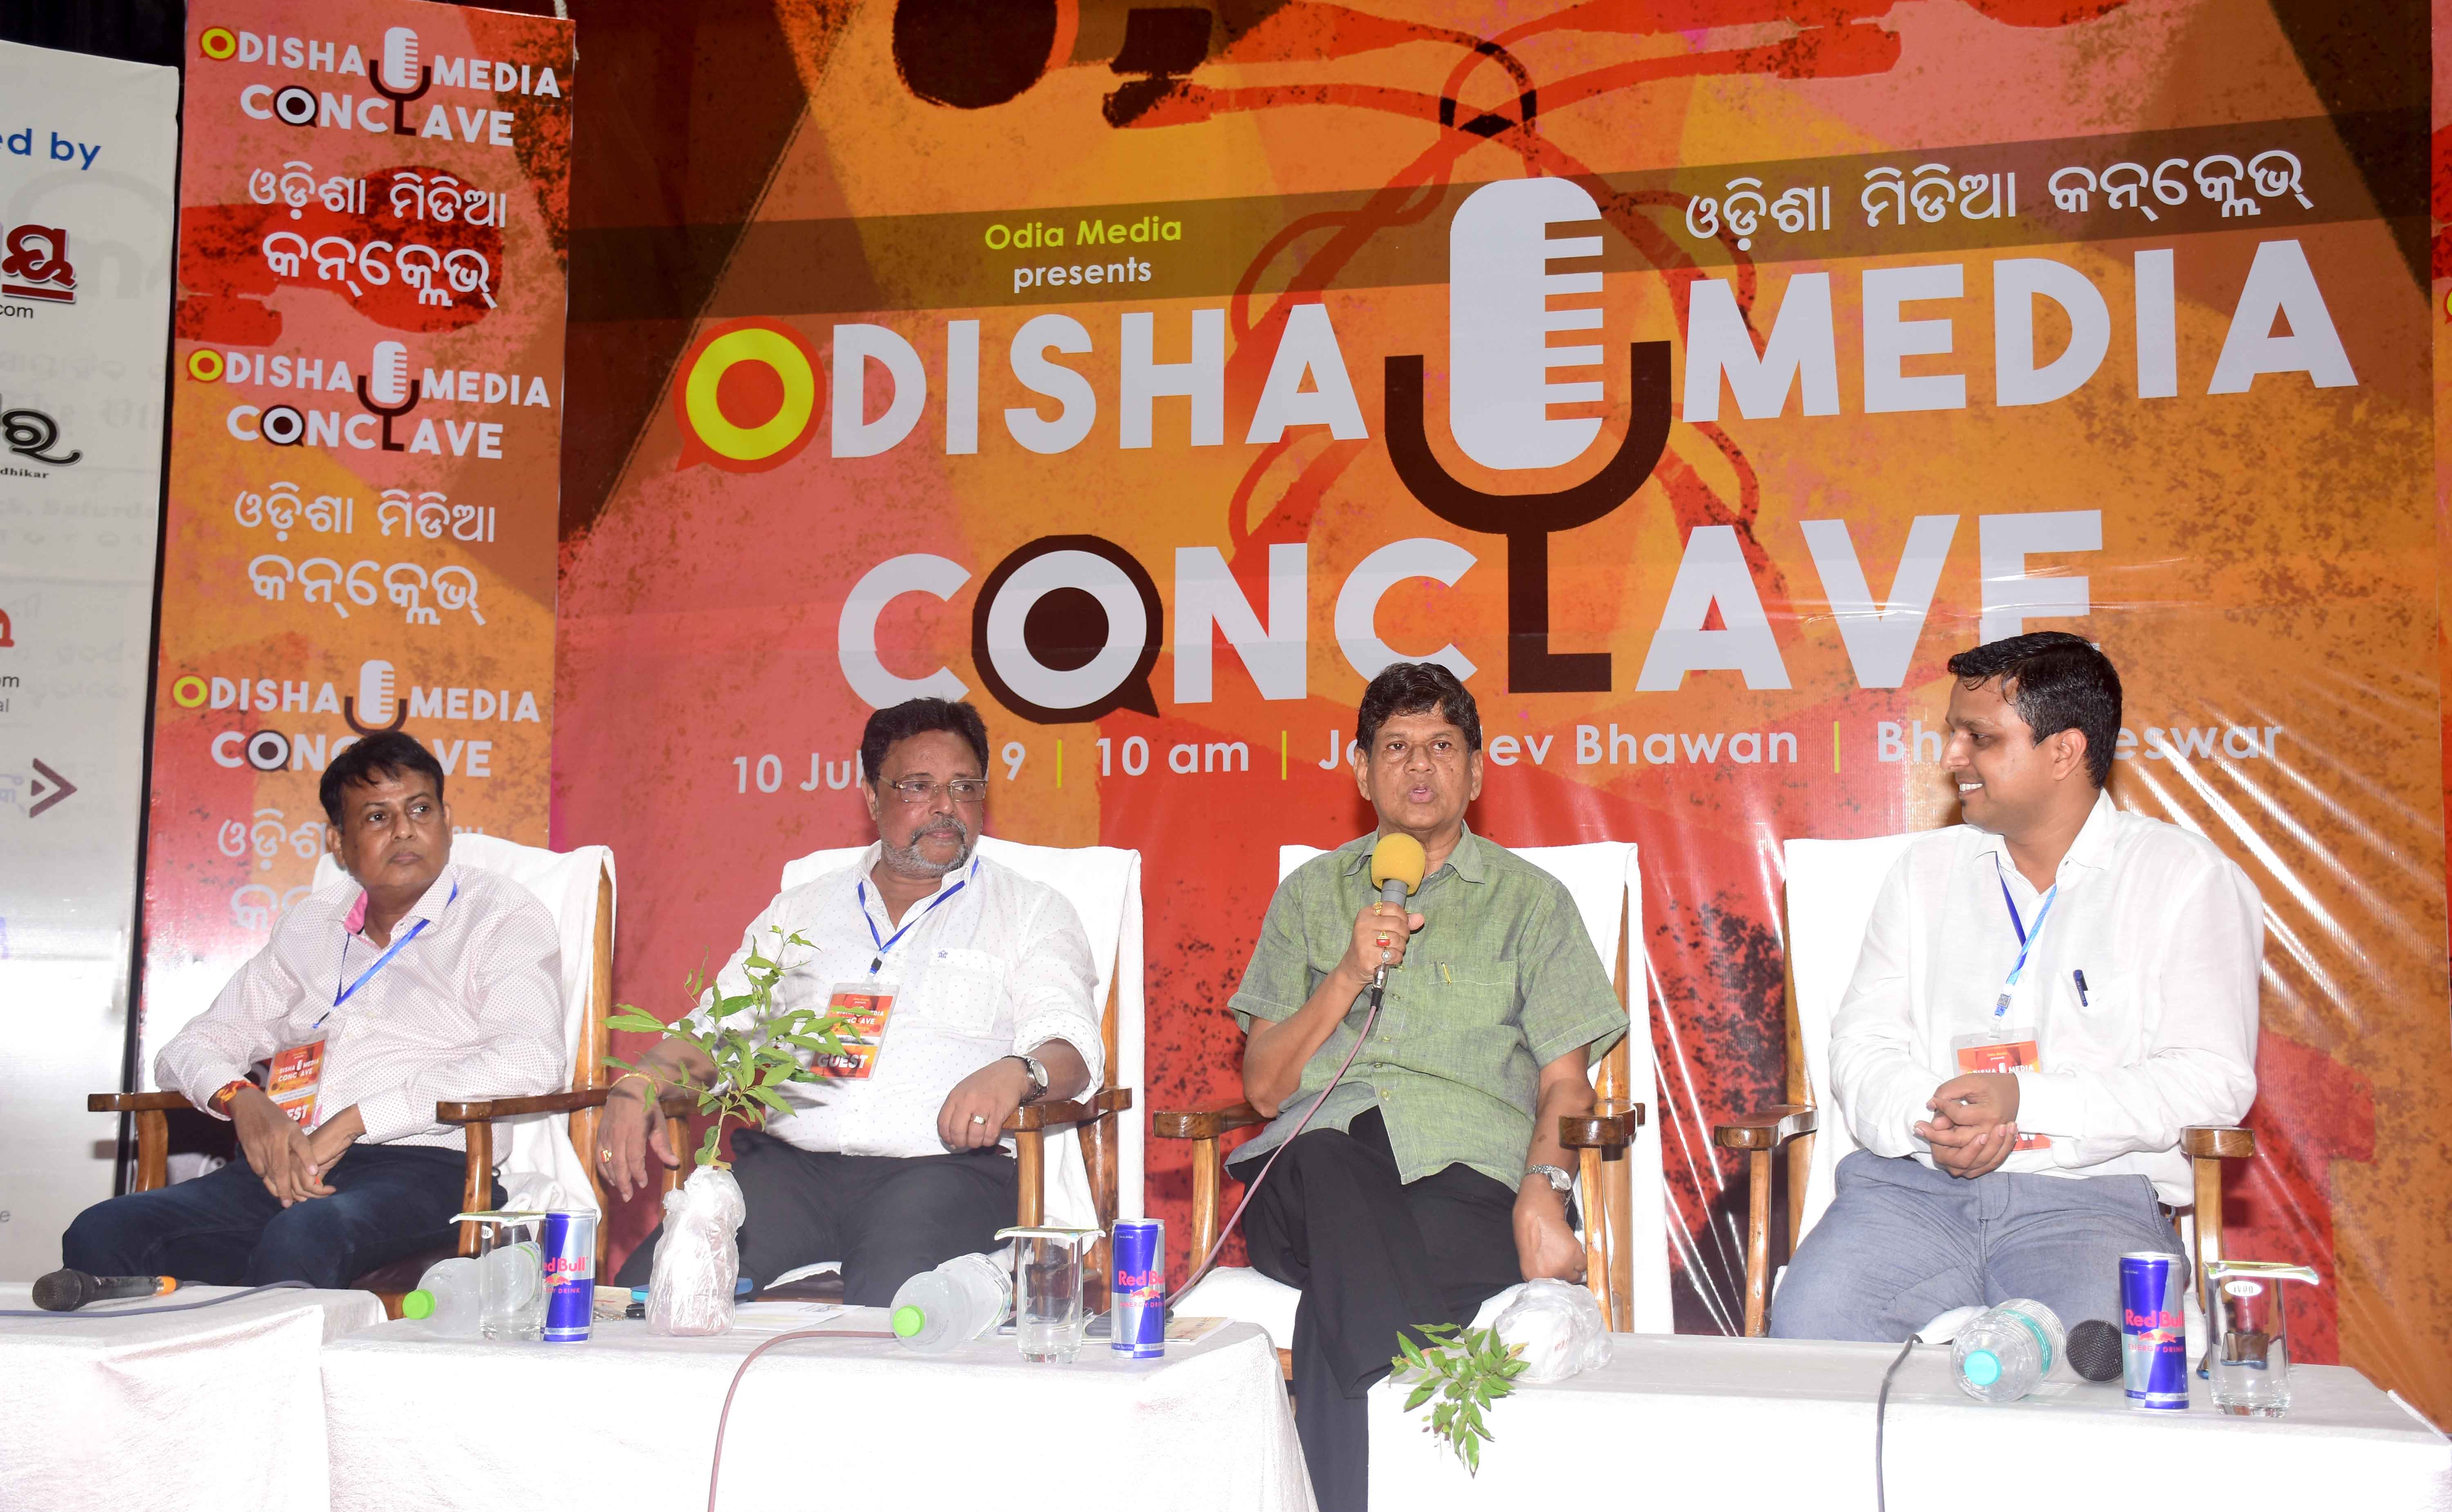 Odisha Media Conclave Inaugural Session